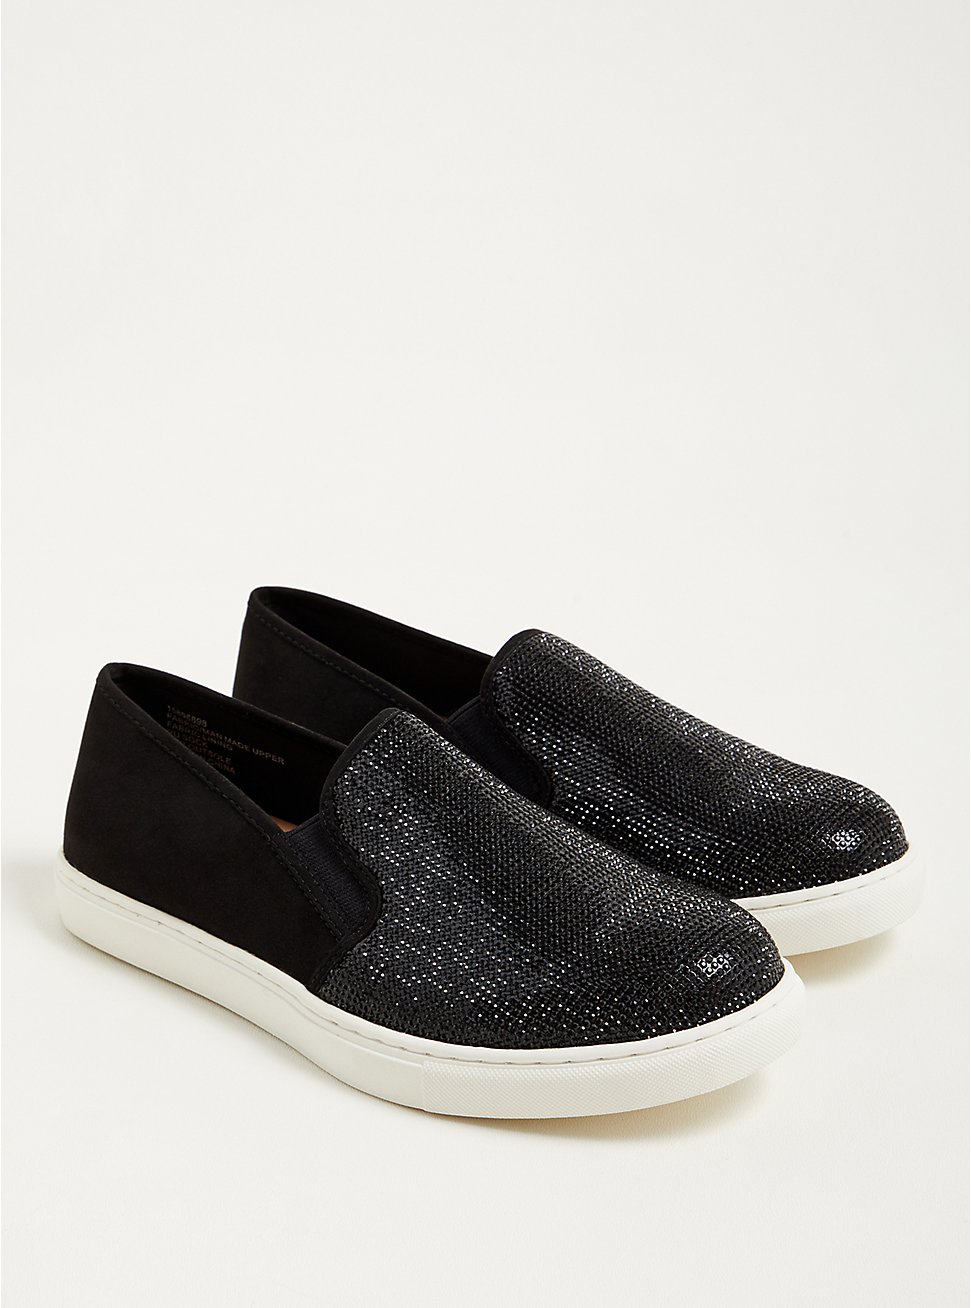 Plus Size Embellished Slip-On Sneaker - Black (WW), BLACK, hi-res